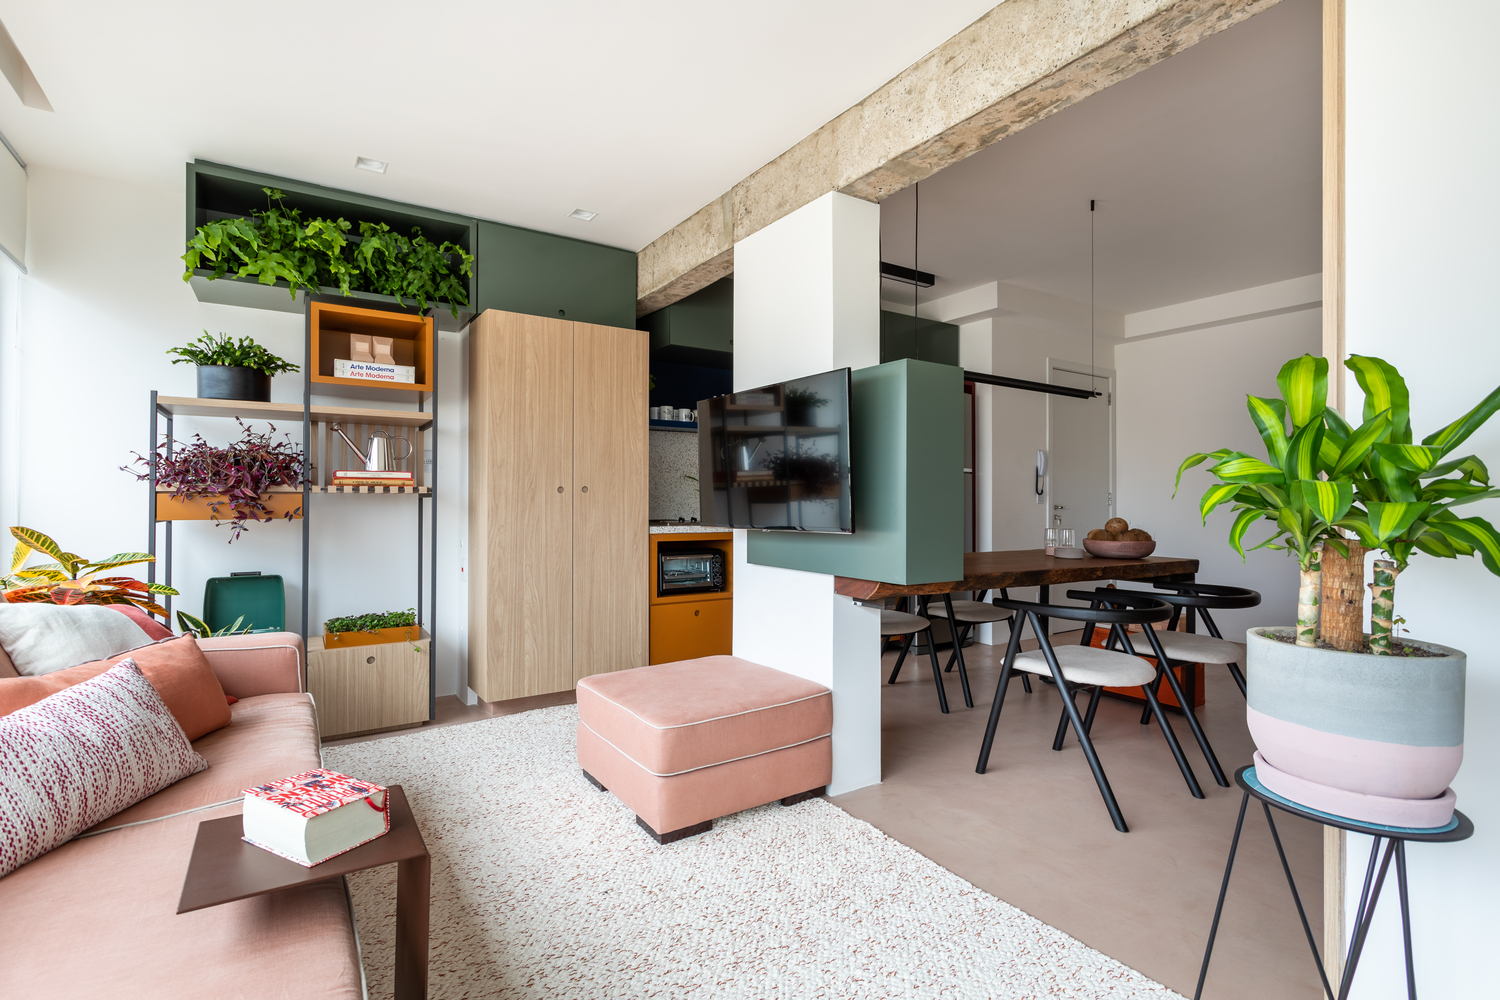 Hình ảnh bên trong một căn hộ 45m2 với sofa màu hồng phấn, kệ lưu trữ, bài trí cây xanh, cạnh đó là bộ bàn ghế ăn nhỏ gọn